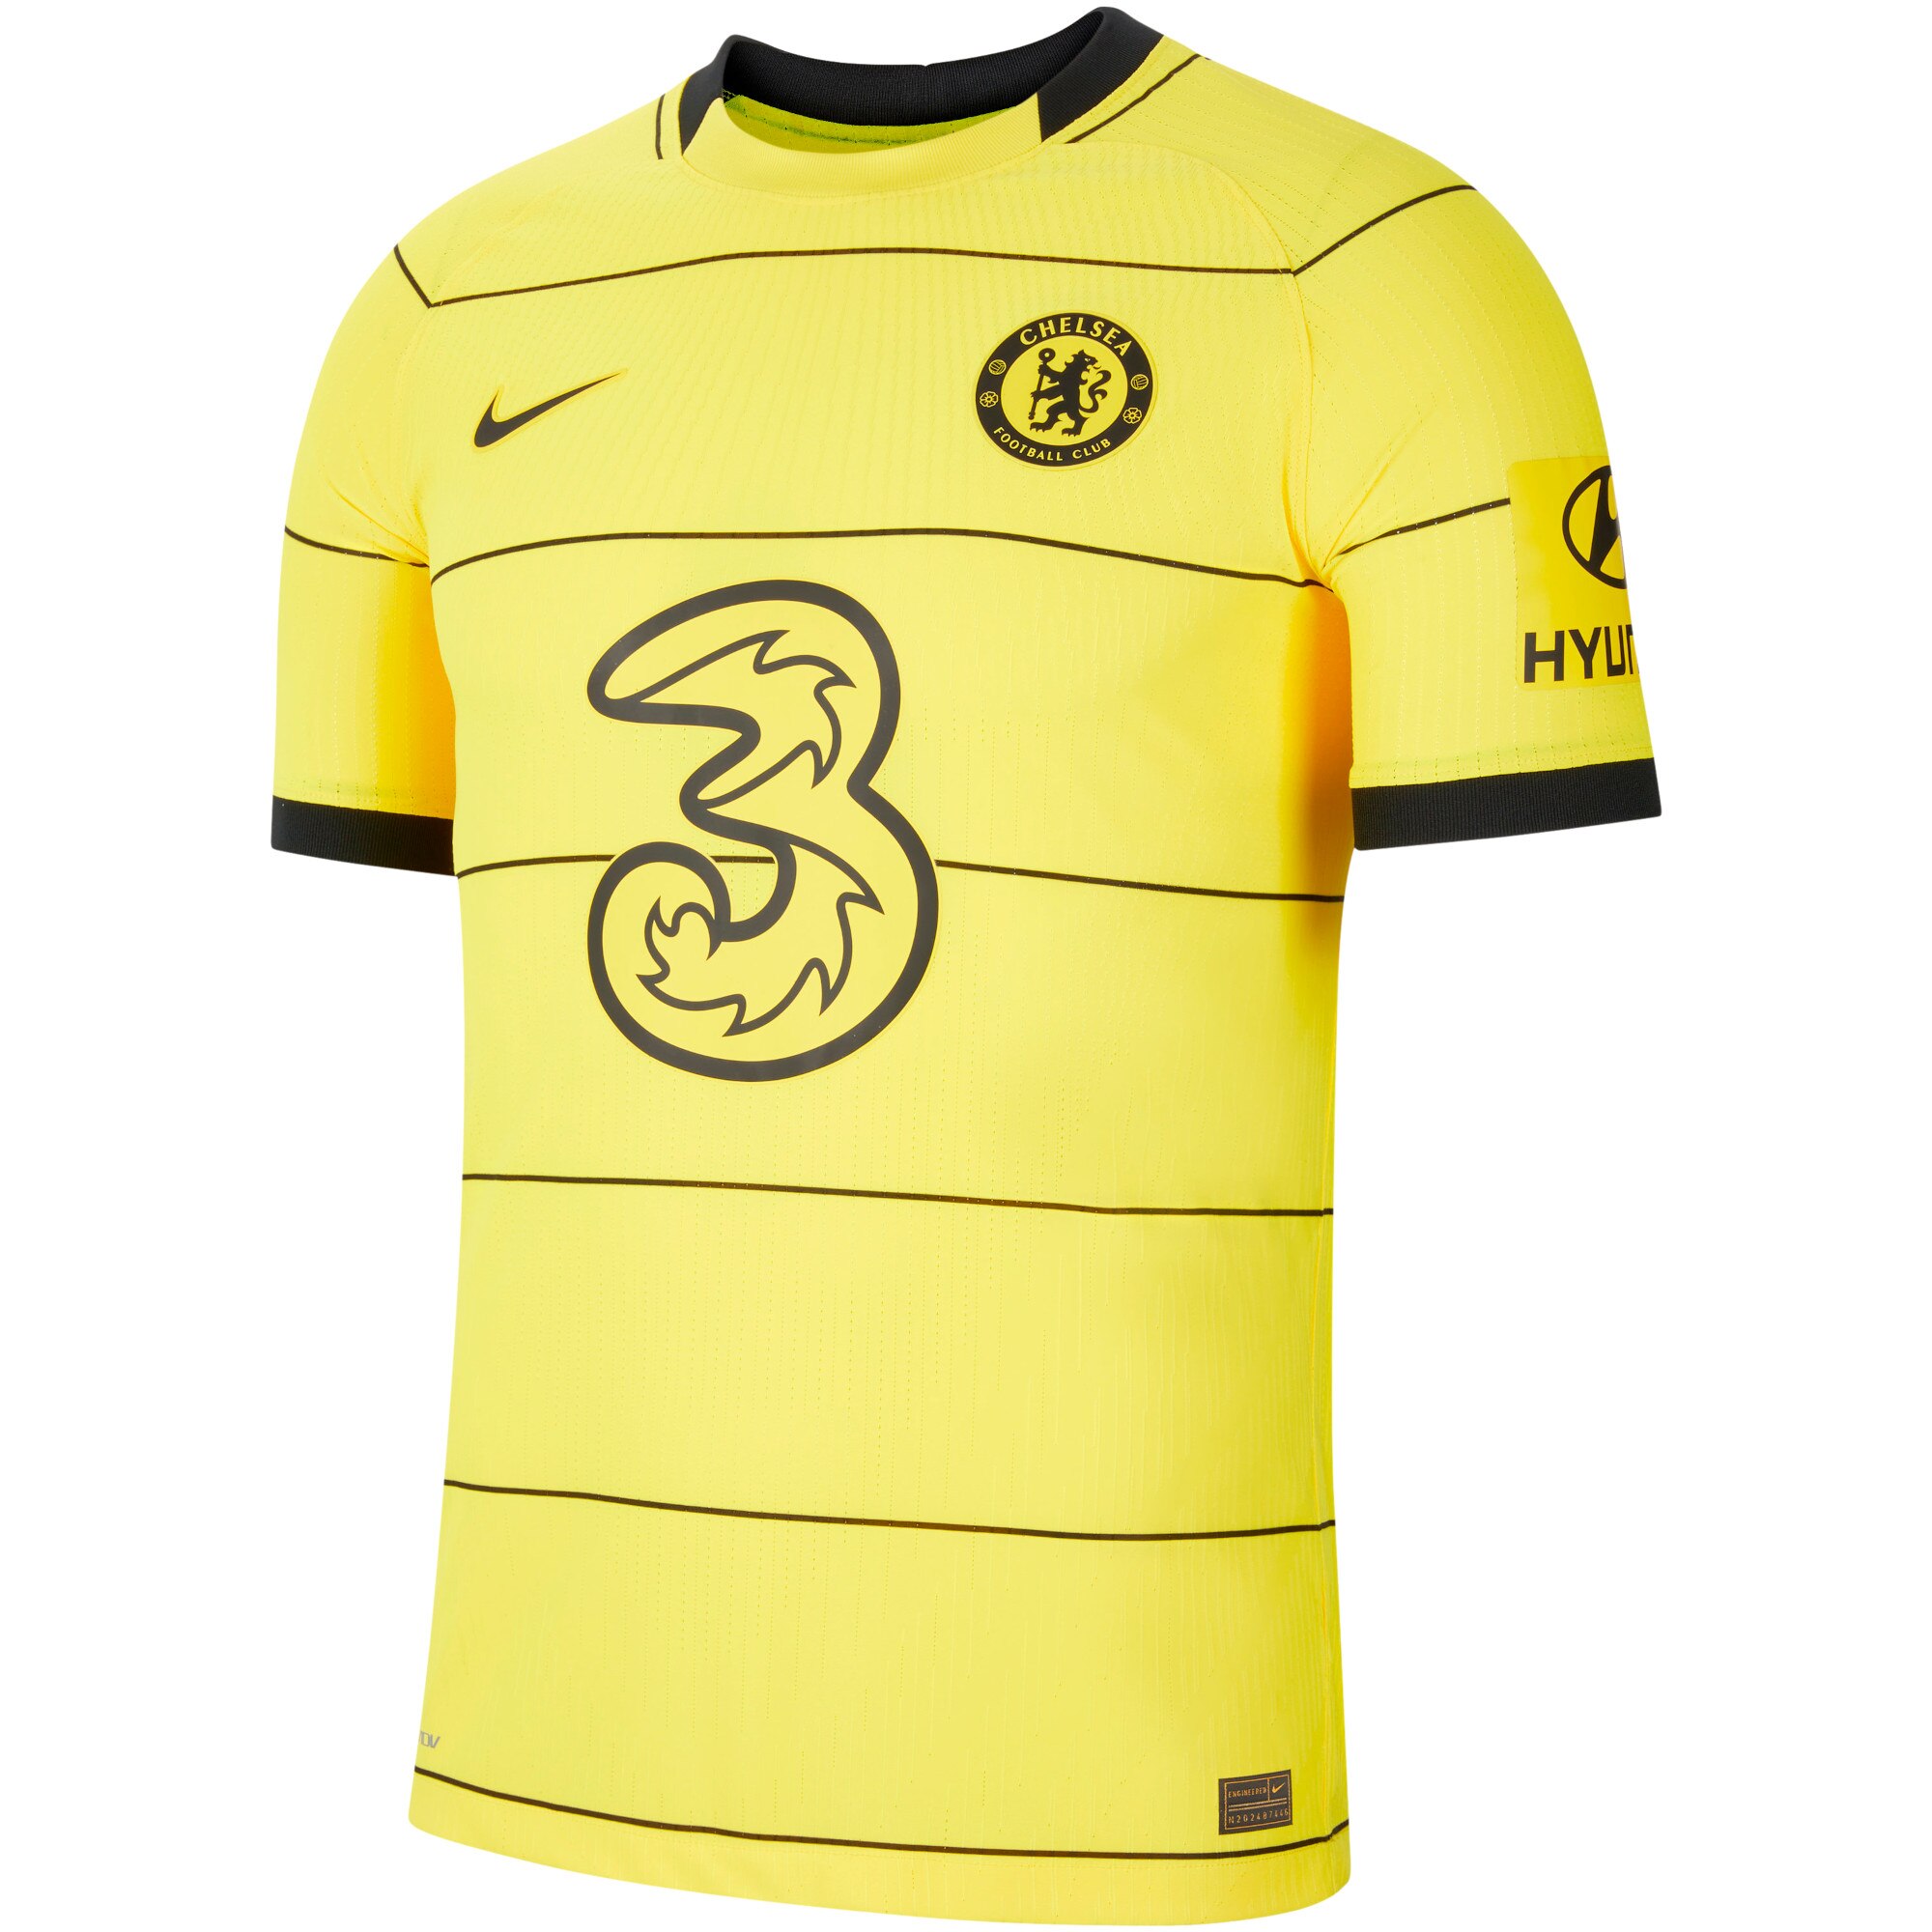 Chelsea Away Vapor Match Shirt 2021-22 with Sarr 31 printing